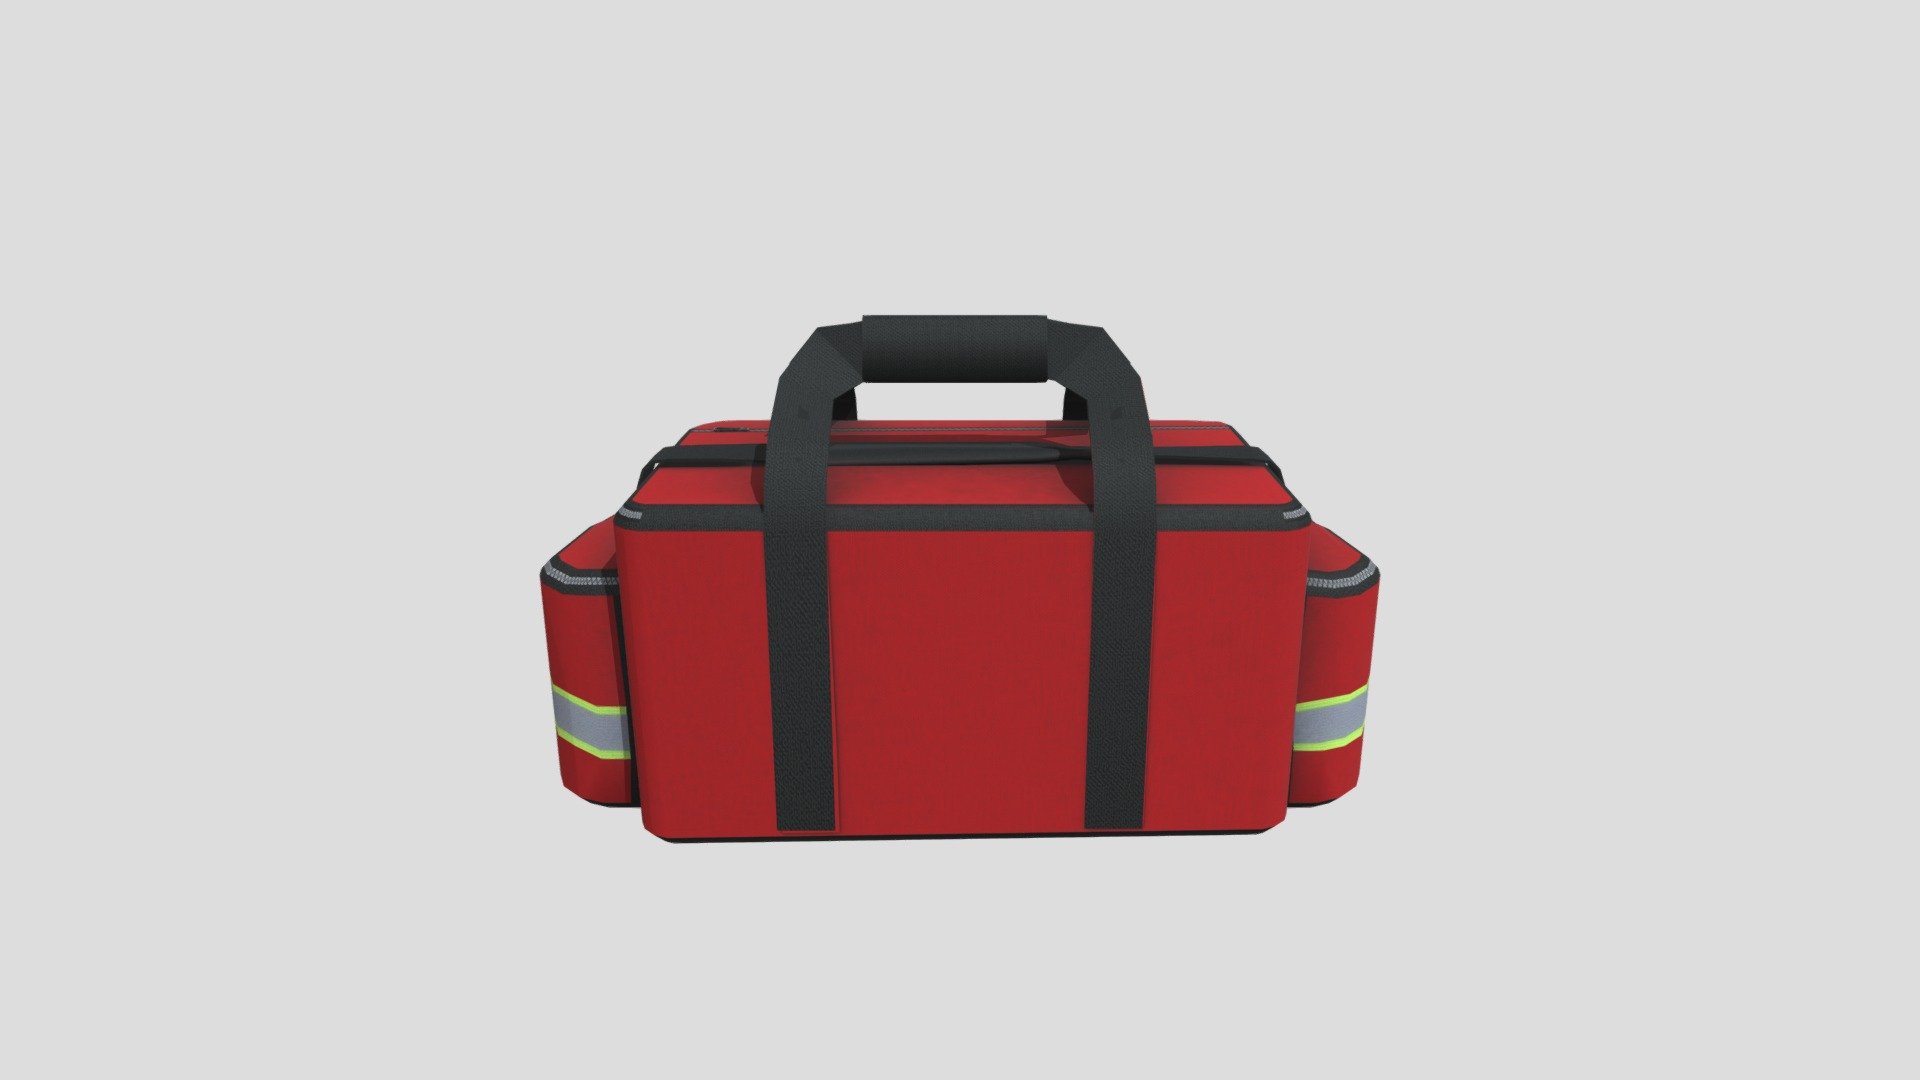 paramedic_bag_red_obj - 3D model by marcionicolini1983 3d model